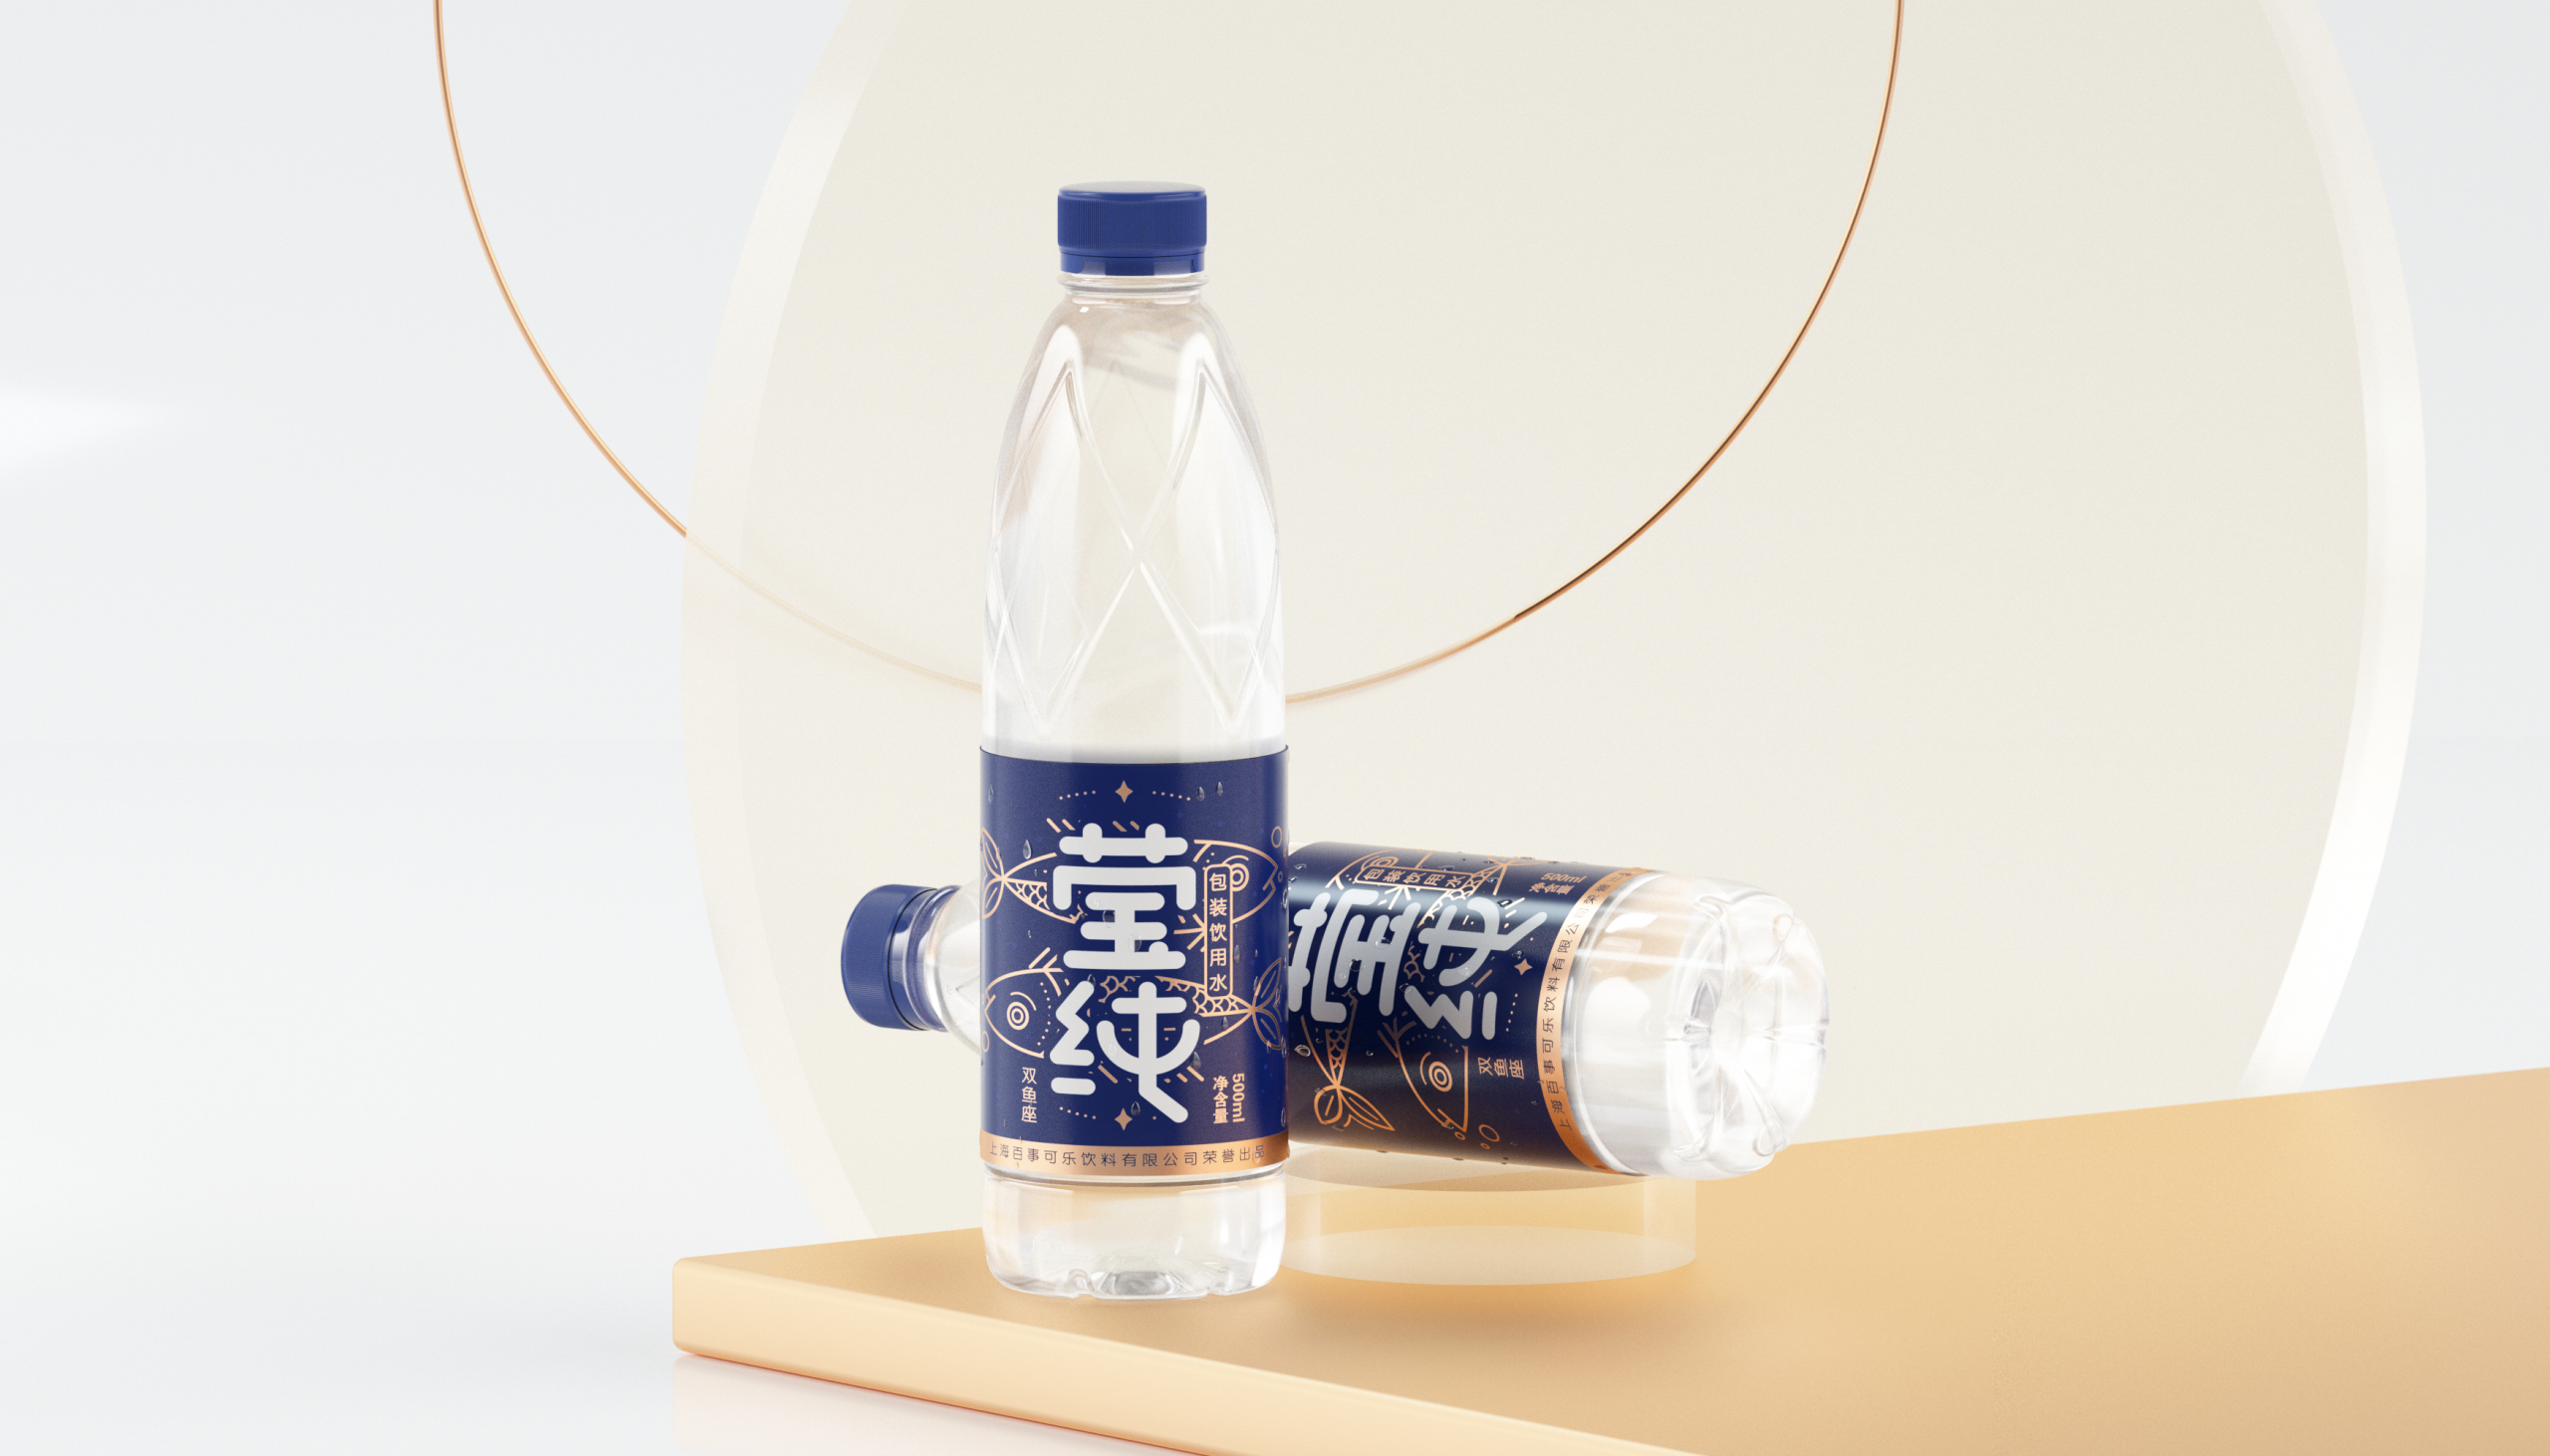 百事可乐“莹纯”十二星座矿泉水包装设计瓶型瓶标设计 米克包装设计